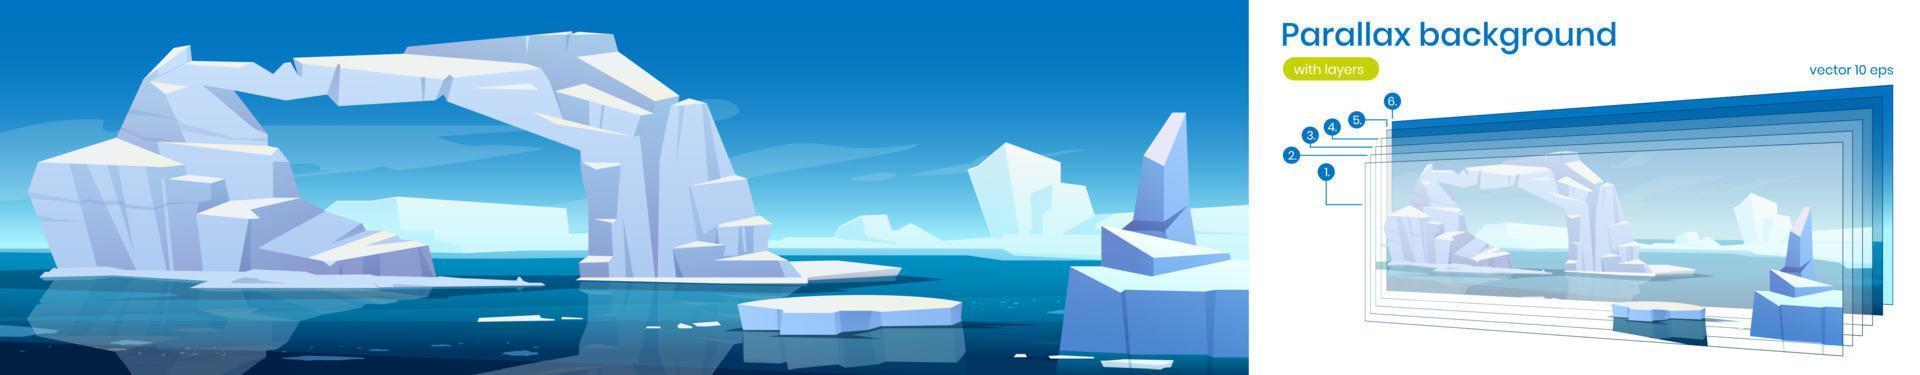 fond de parallaxe arctique paysage 2d, iceberg vecteur